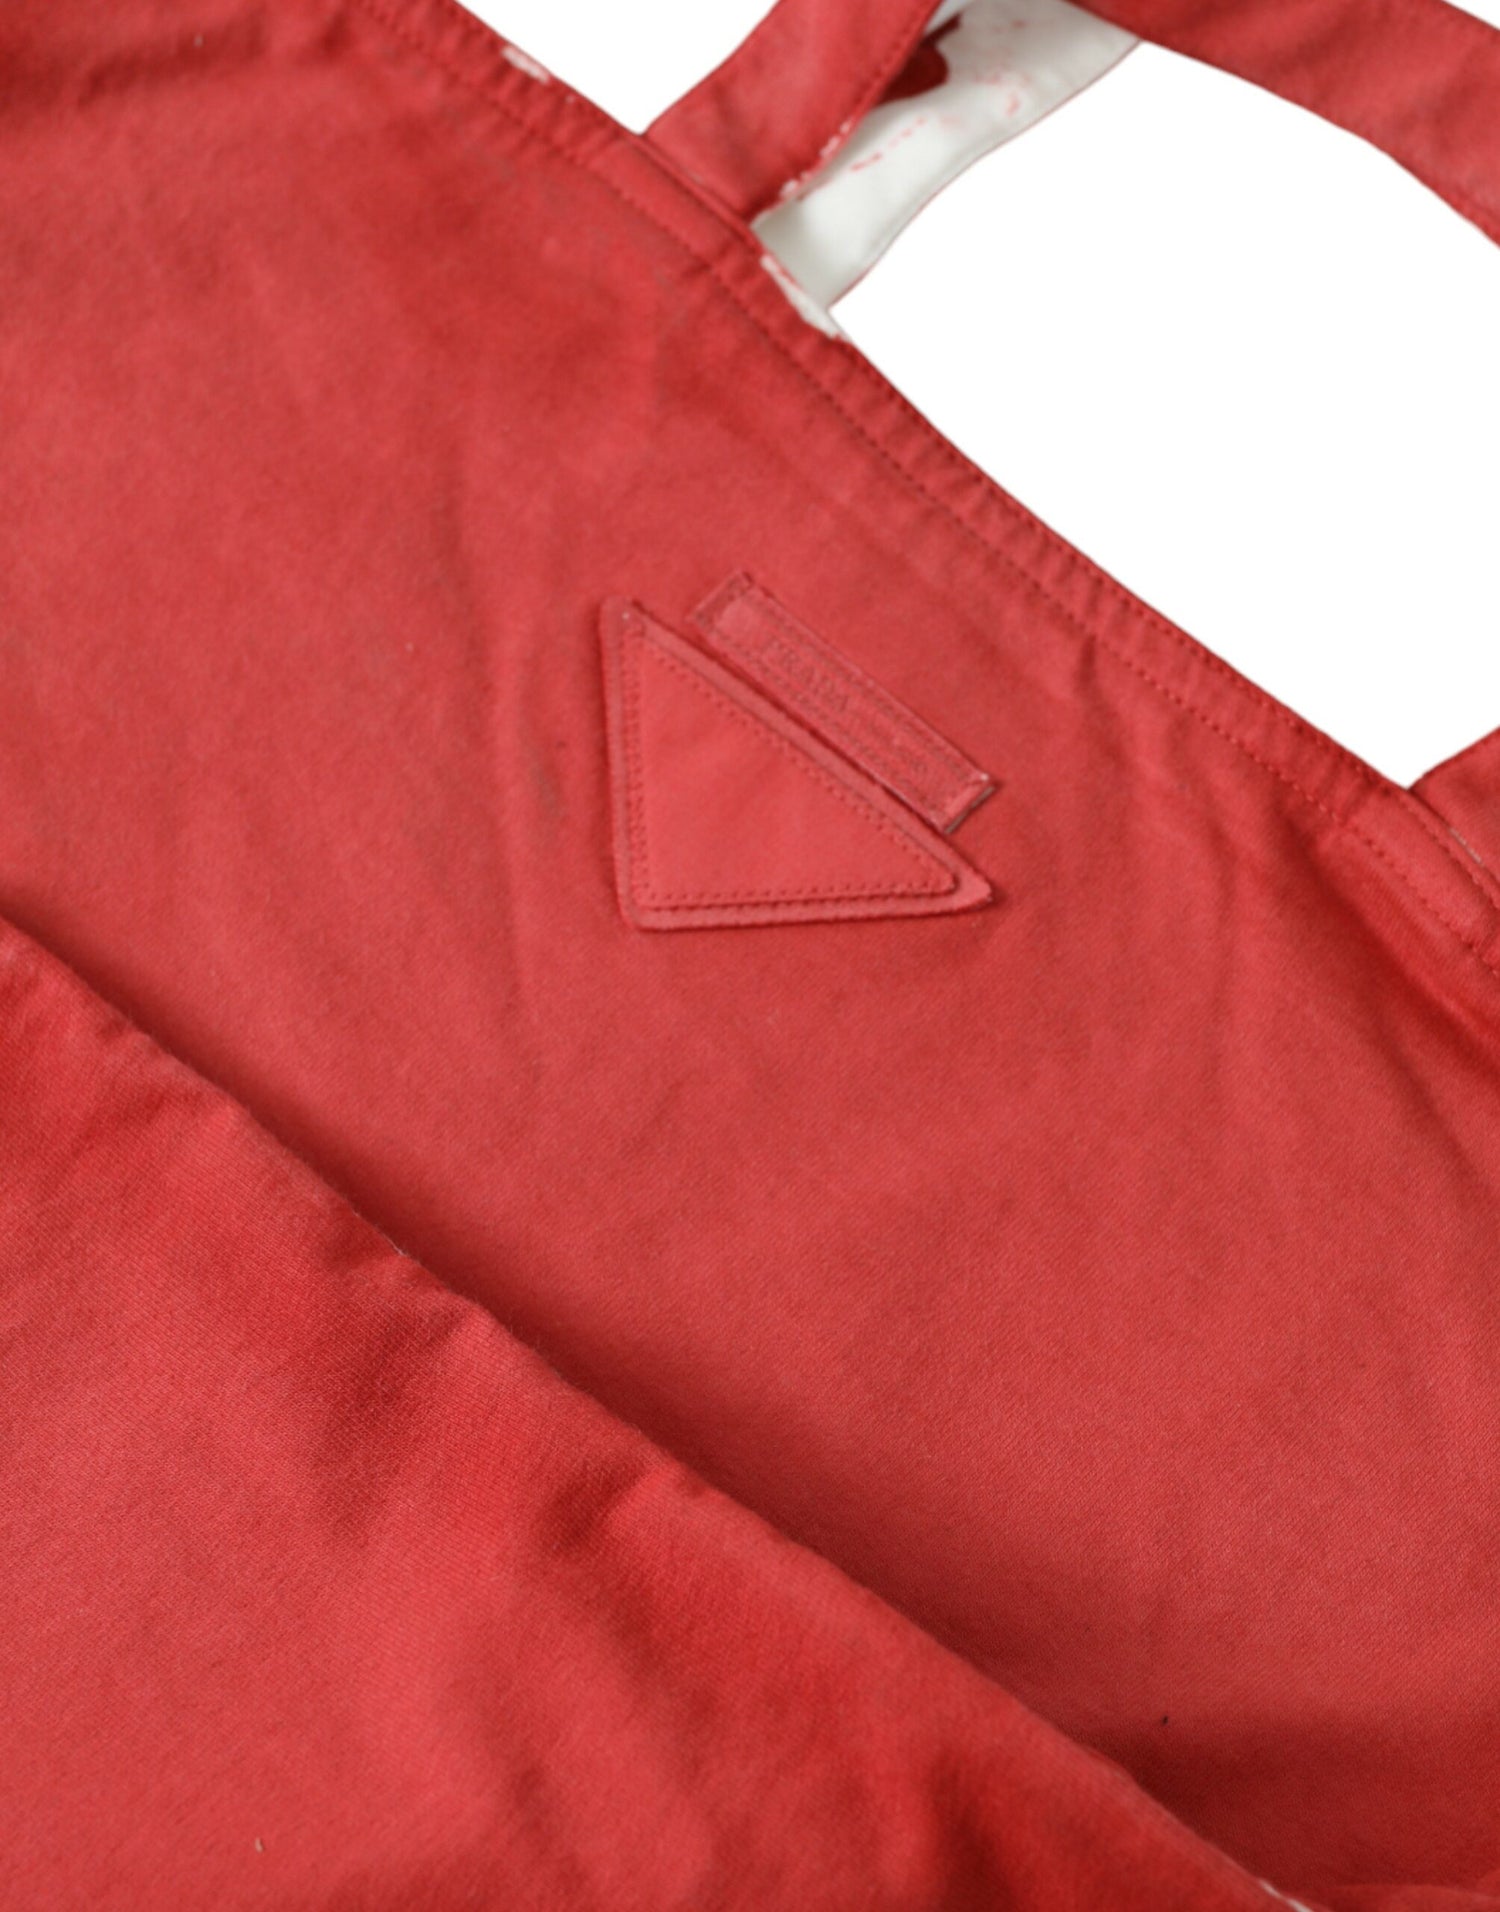 Prada Chic Red and White Fabric Tote Bag - DEA STILOSA MILANO